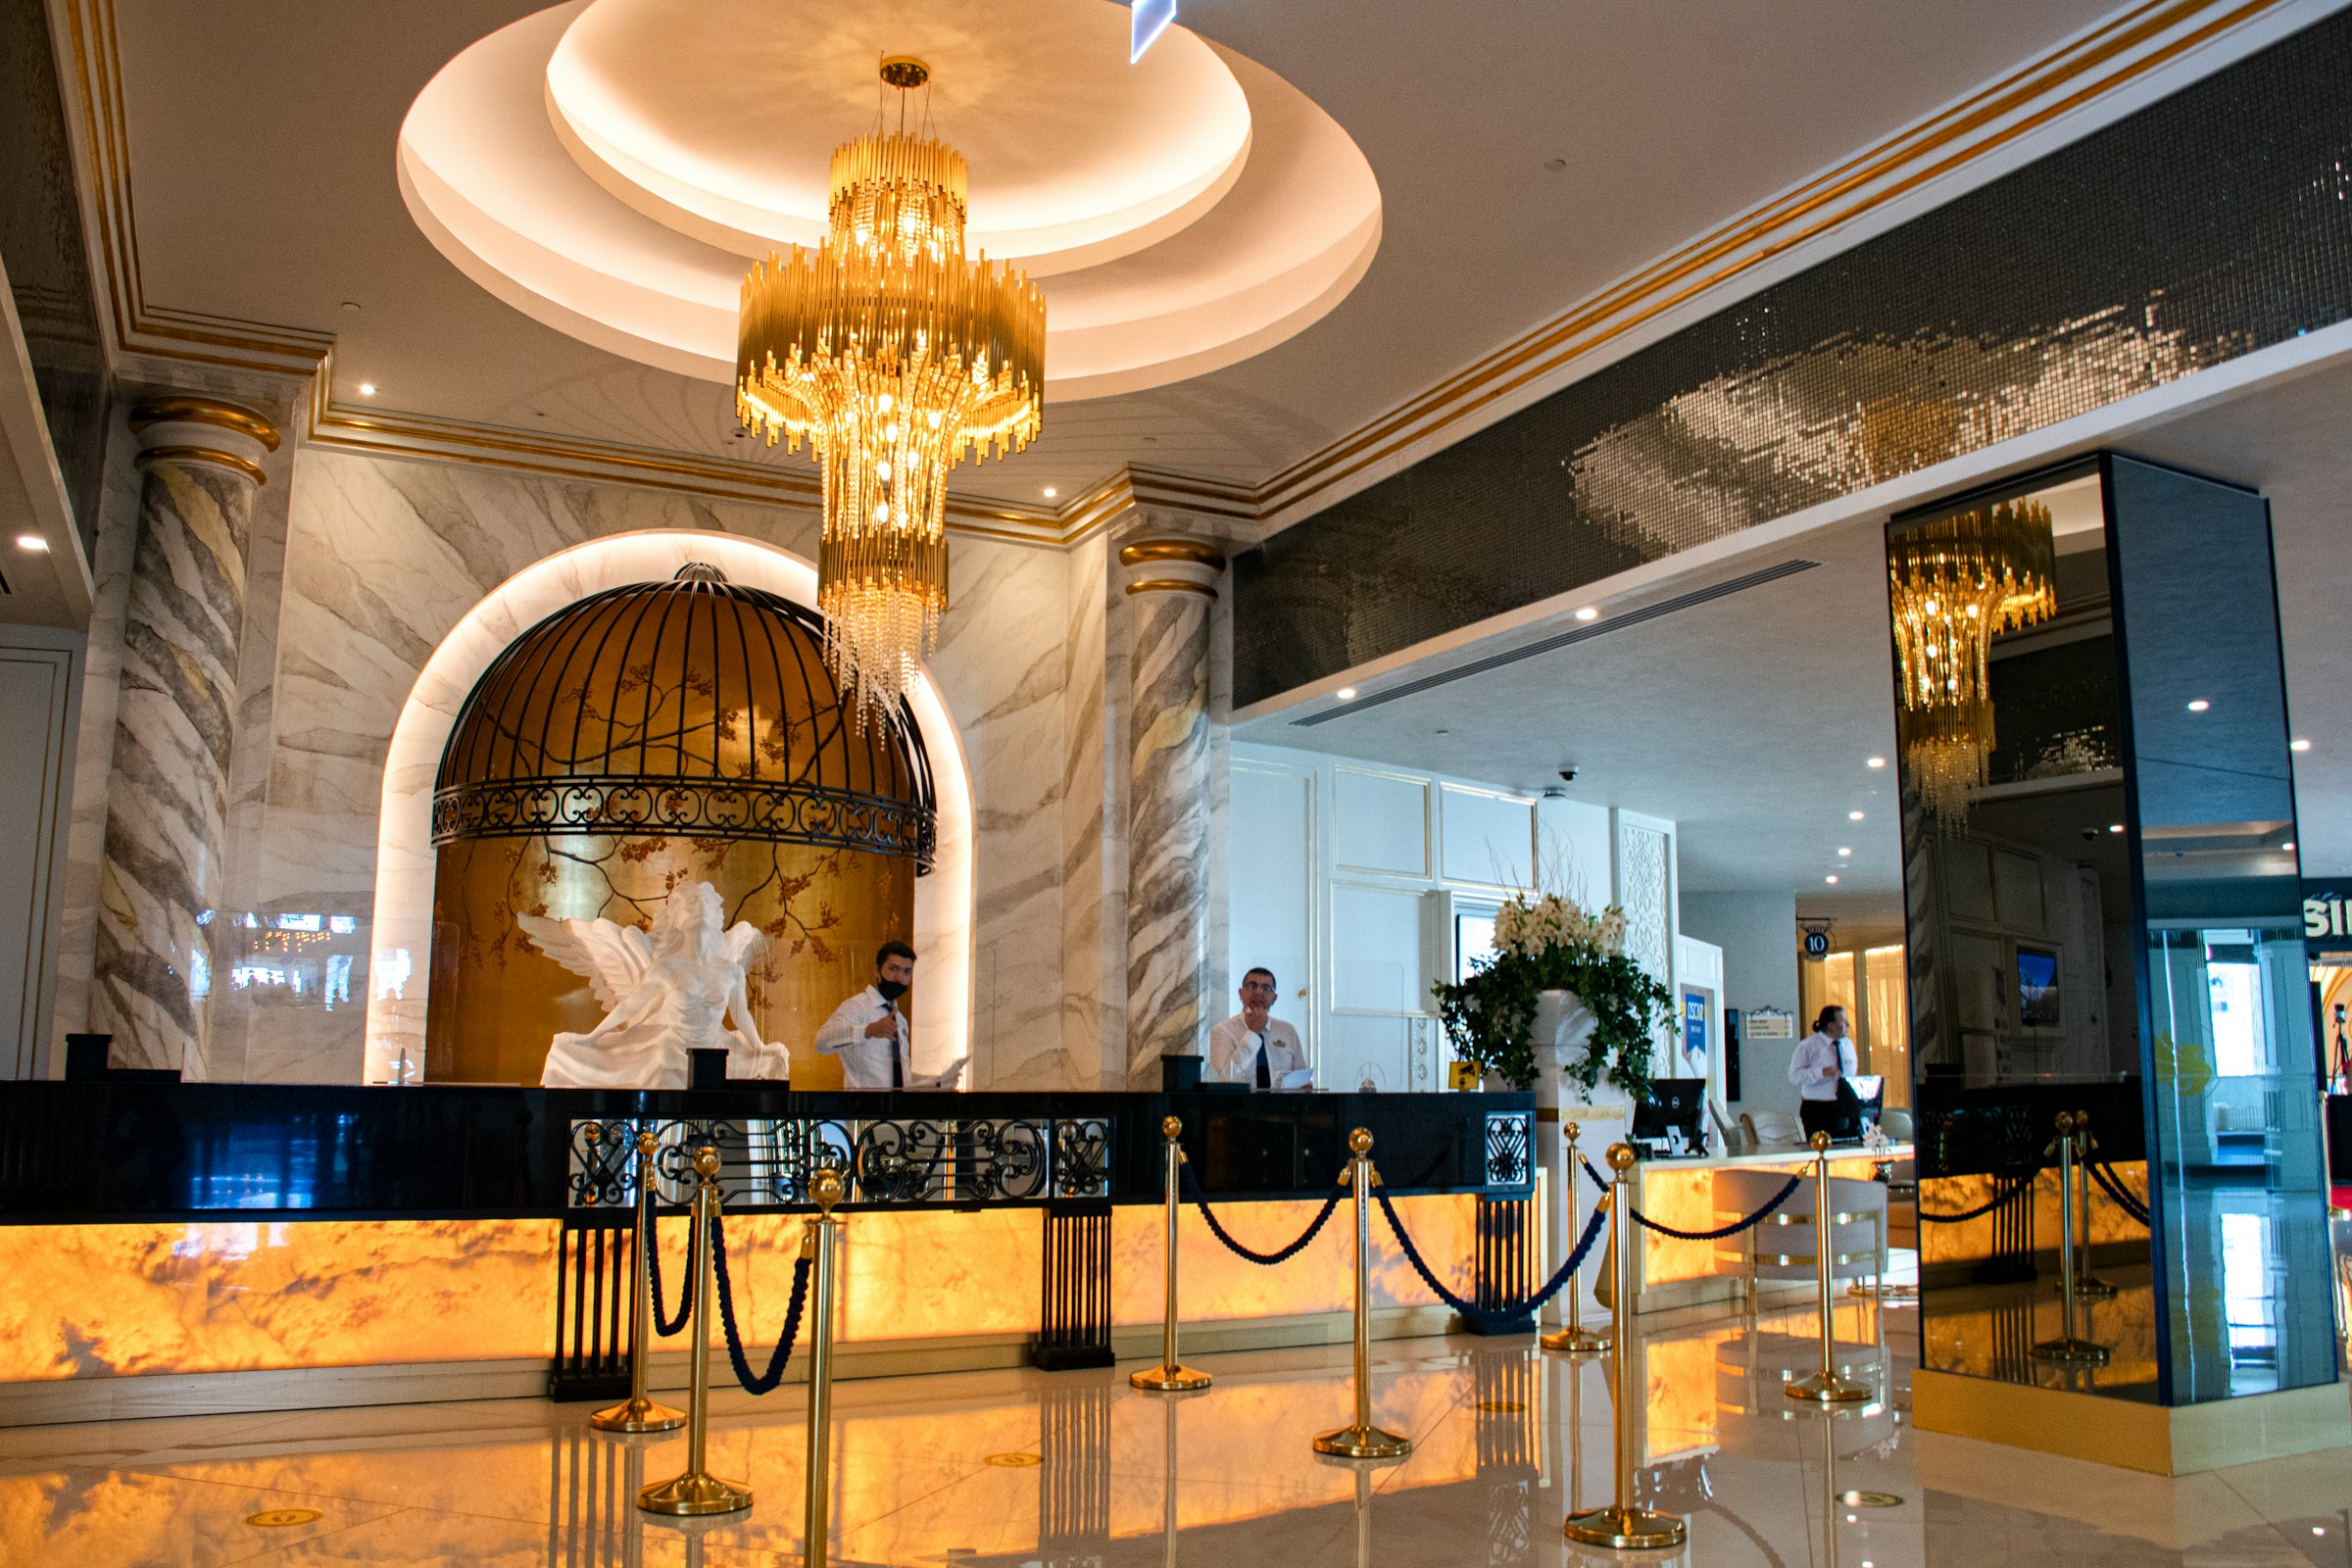 El vestíbulo de un hotel de lujo | Fuente: Unsplash